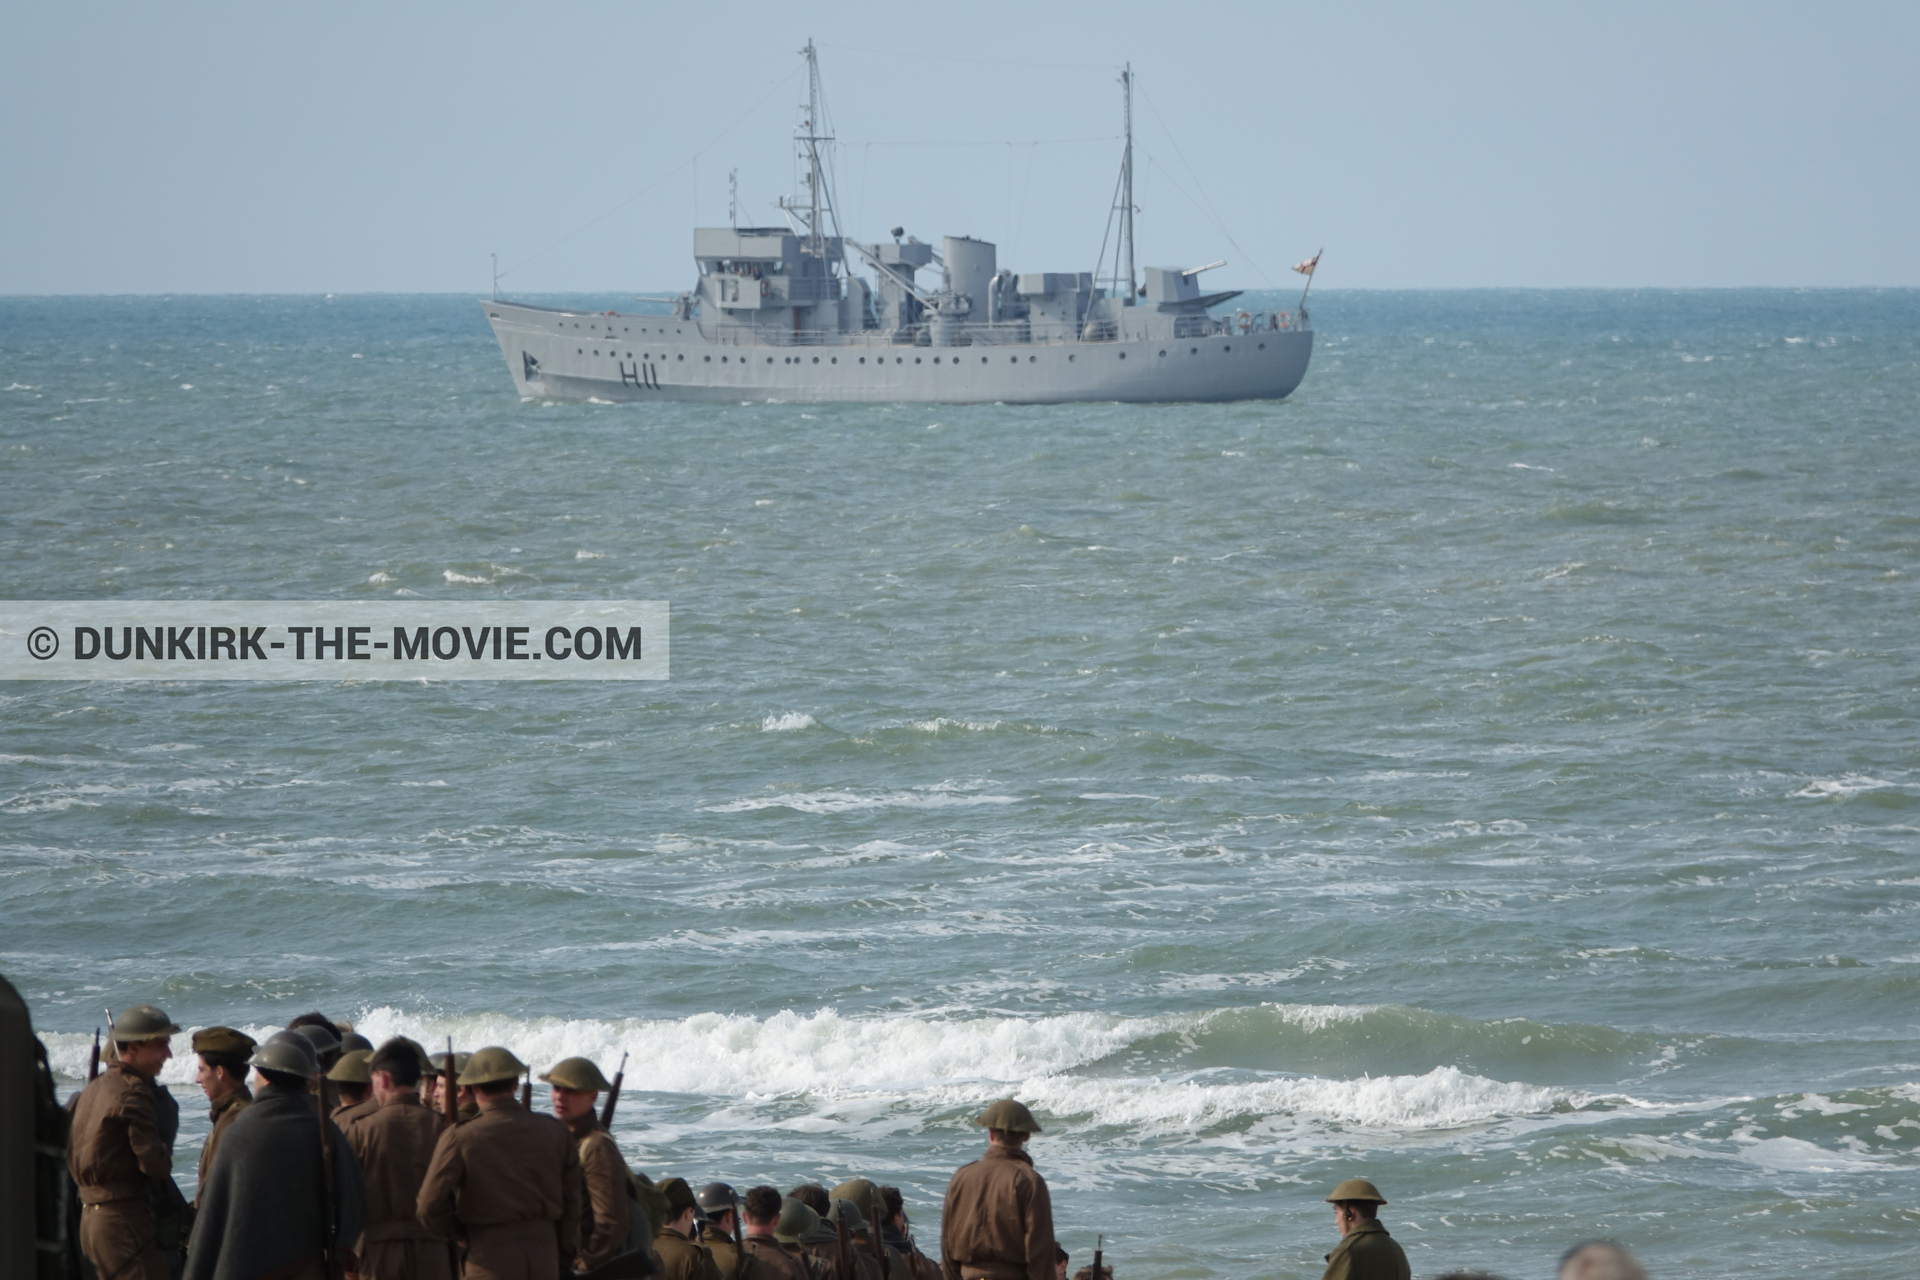 Fotos con barco, extras, mares agitados,  durante el rodaje de la película Dunkerque de Nolan